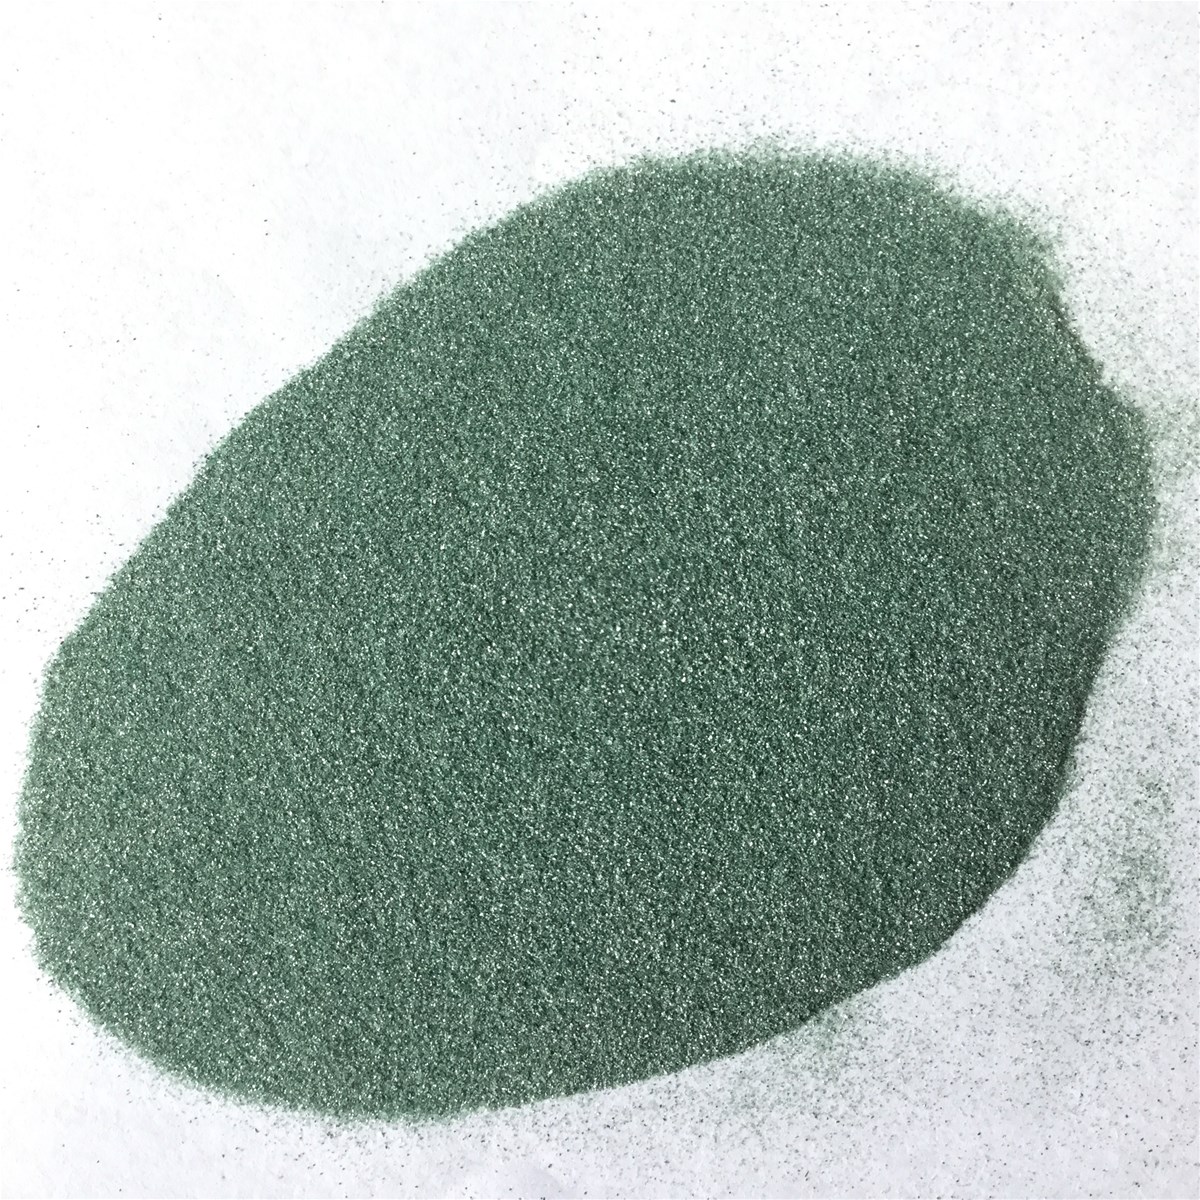 SiC 99min green corundum green silicon carbide micro powder for oilstone and wetstone